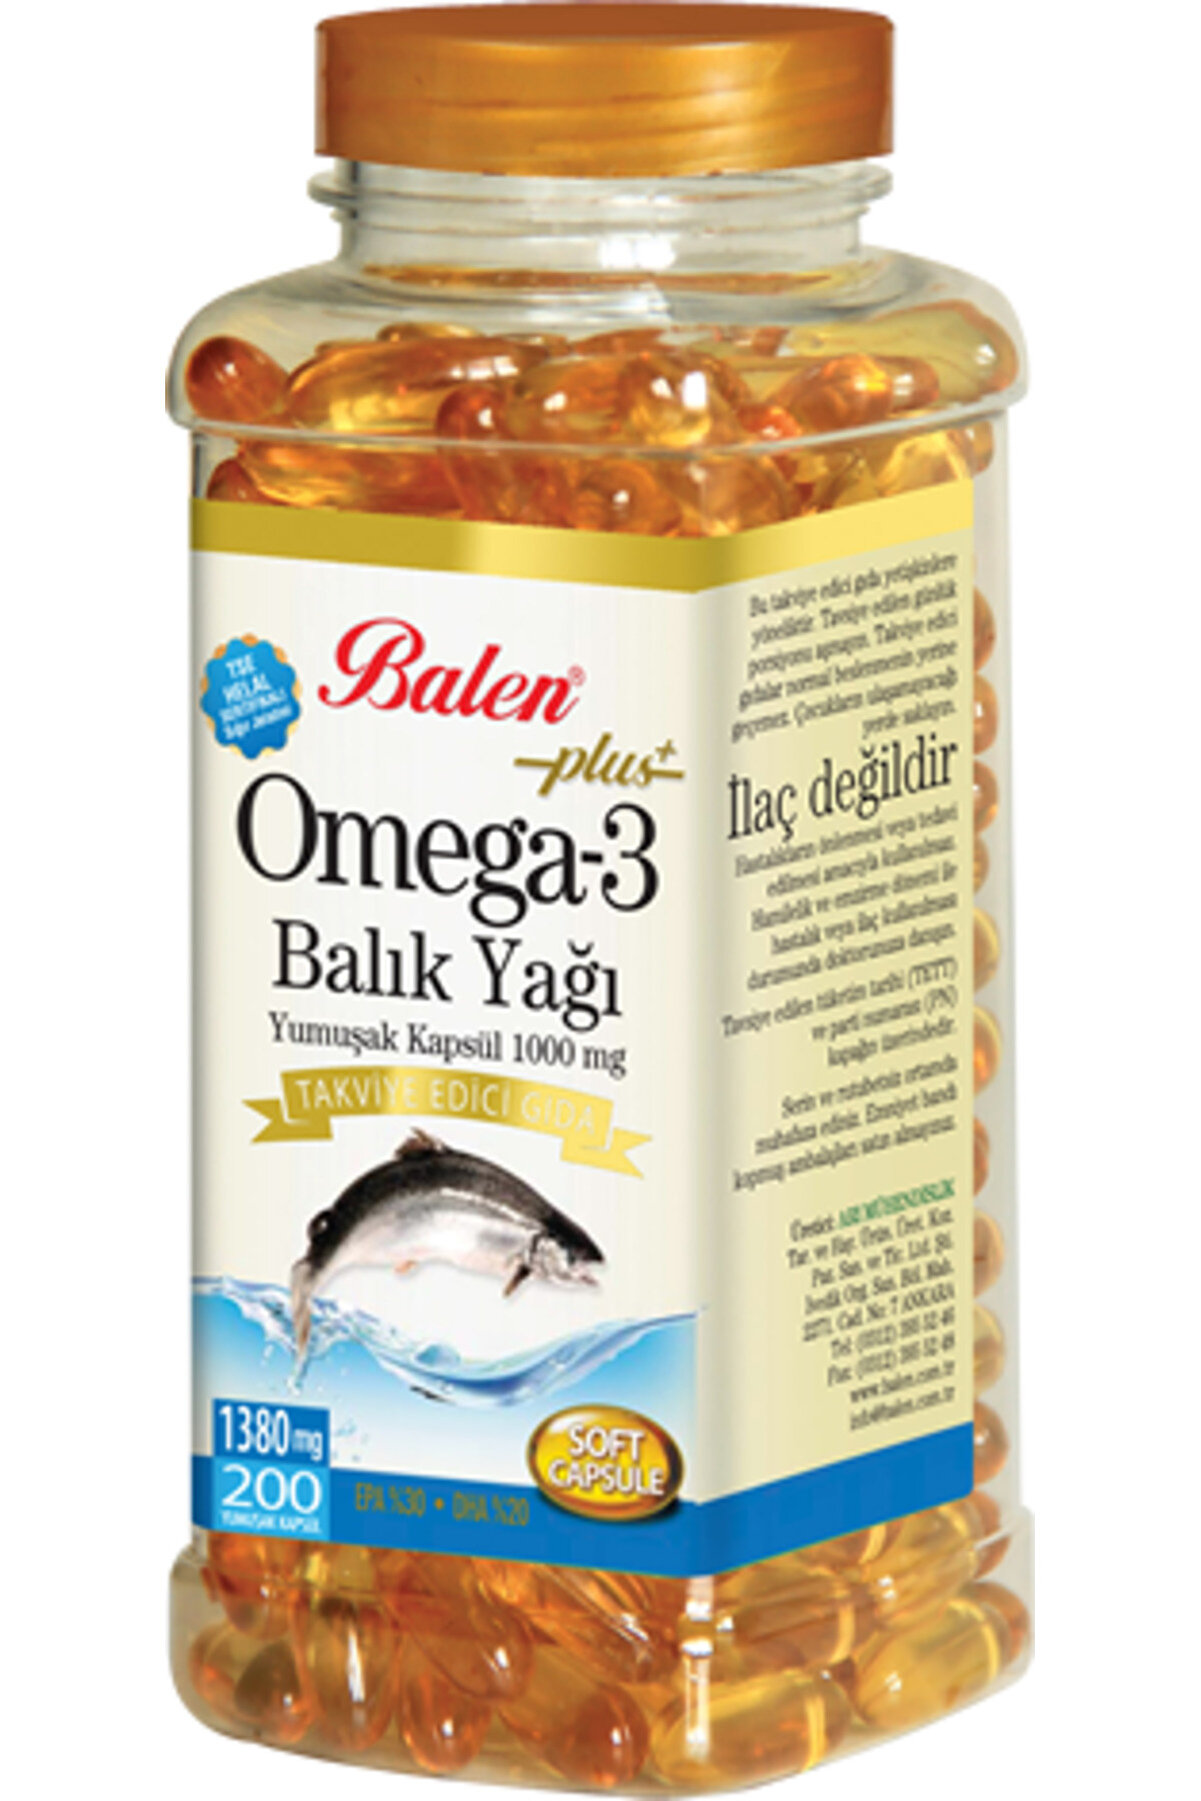 Balen Omega 3 Balık Yağı Yumuşak Kapsül 1380 Mg* 200